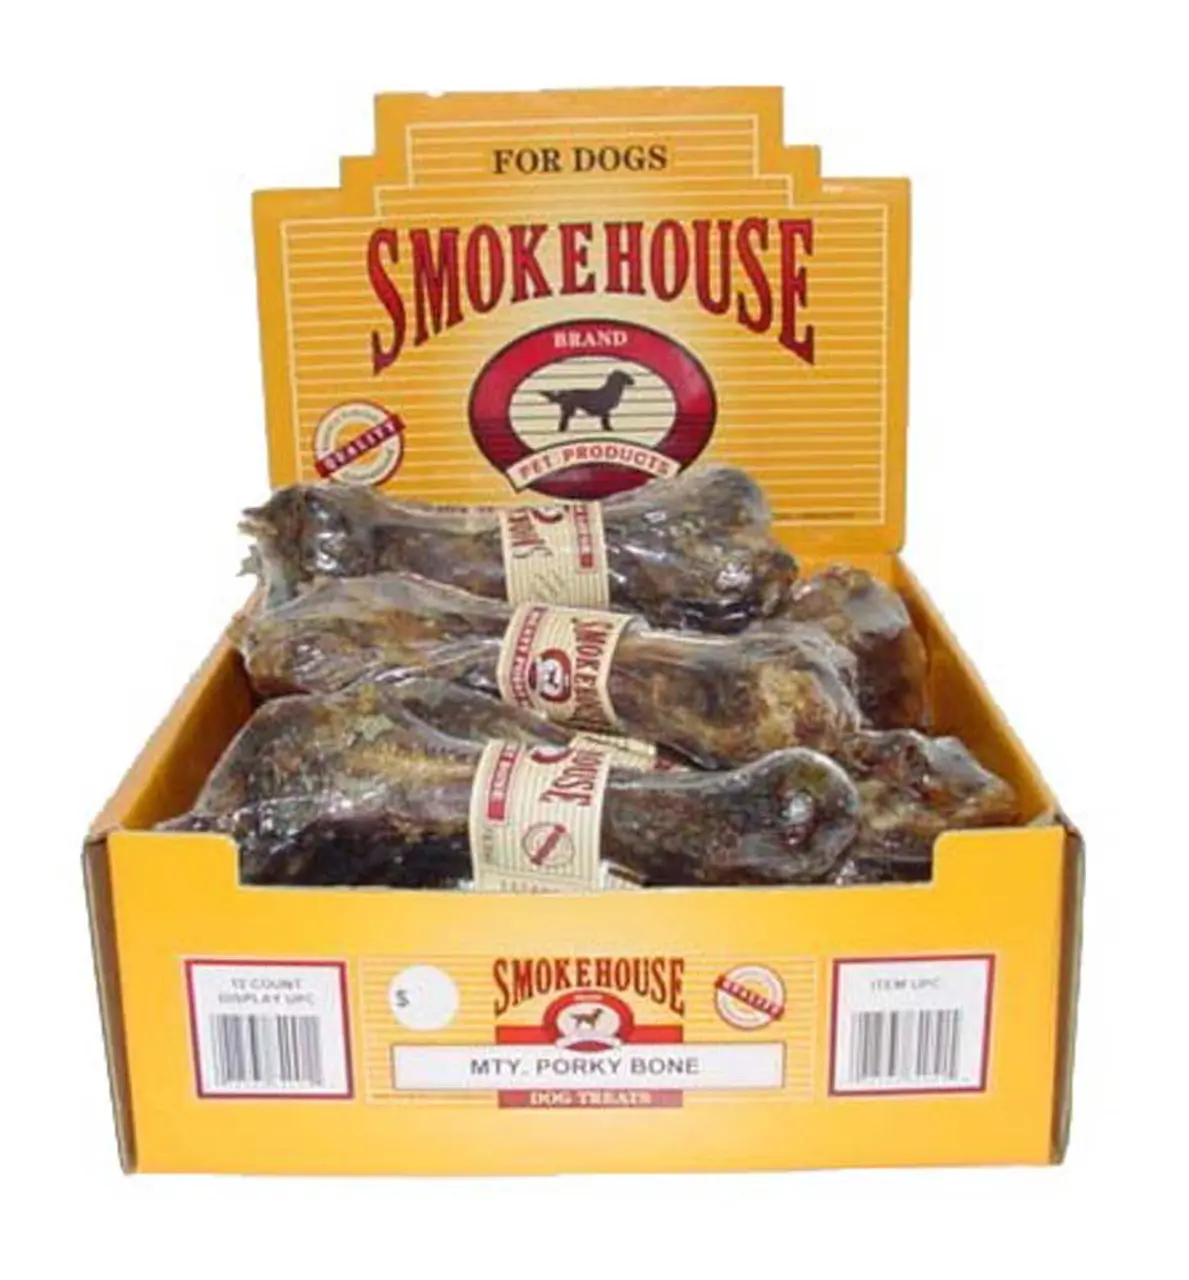 smokehouse porky bone - What if my dog eats a pork bone